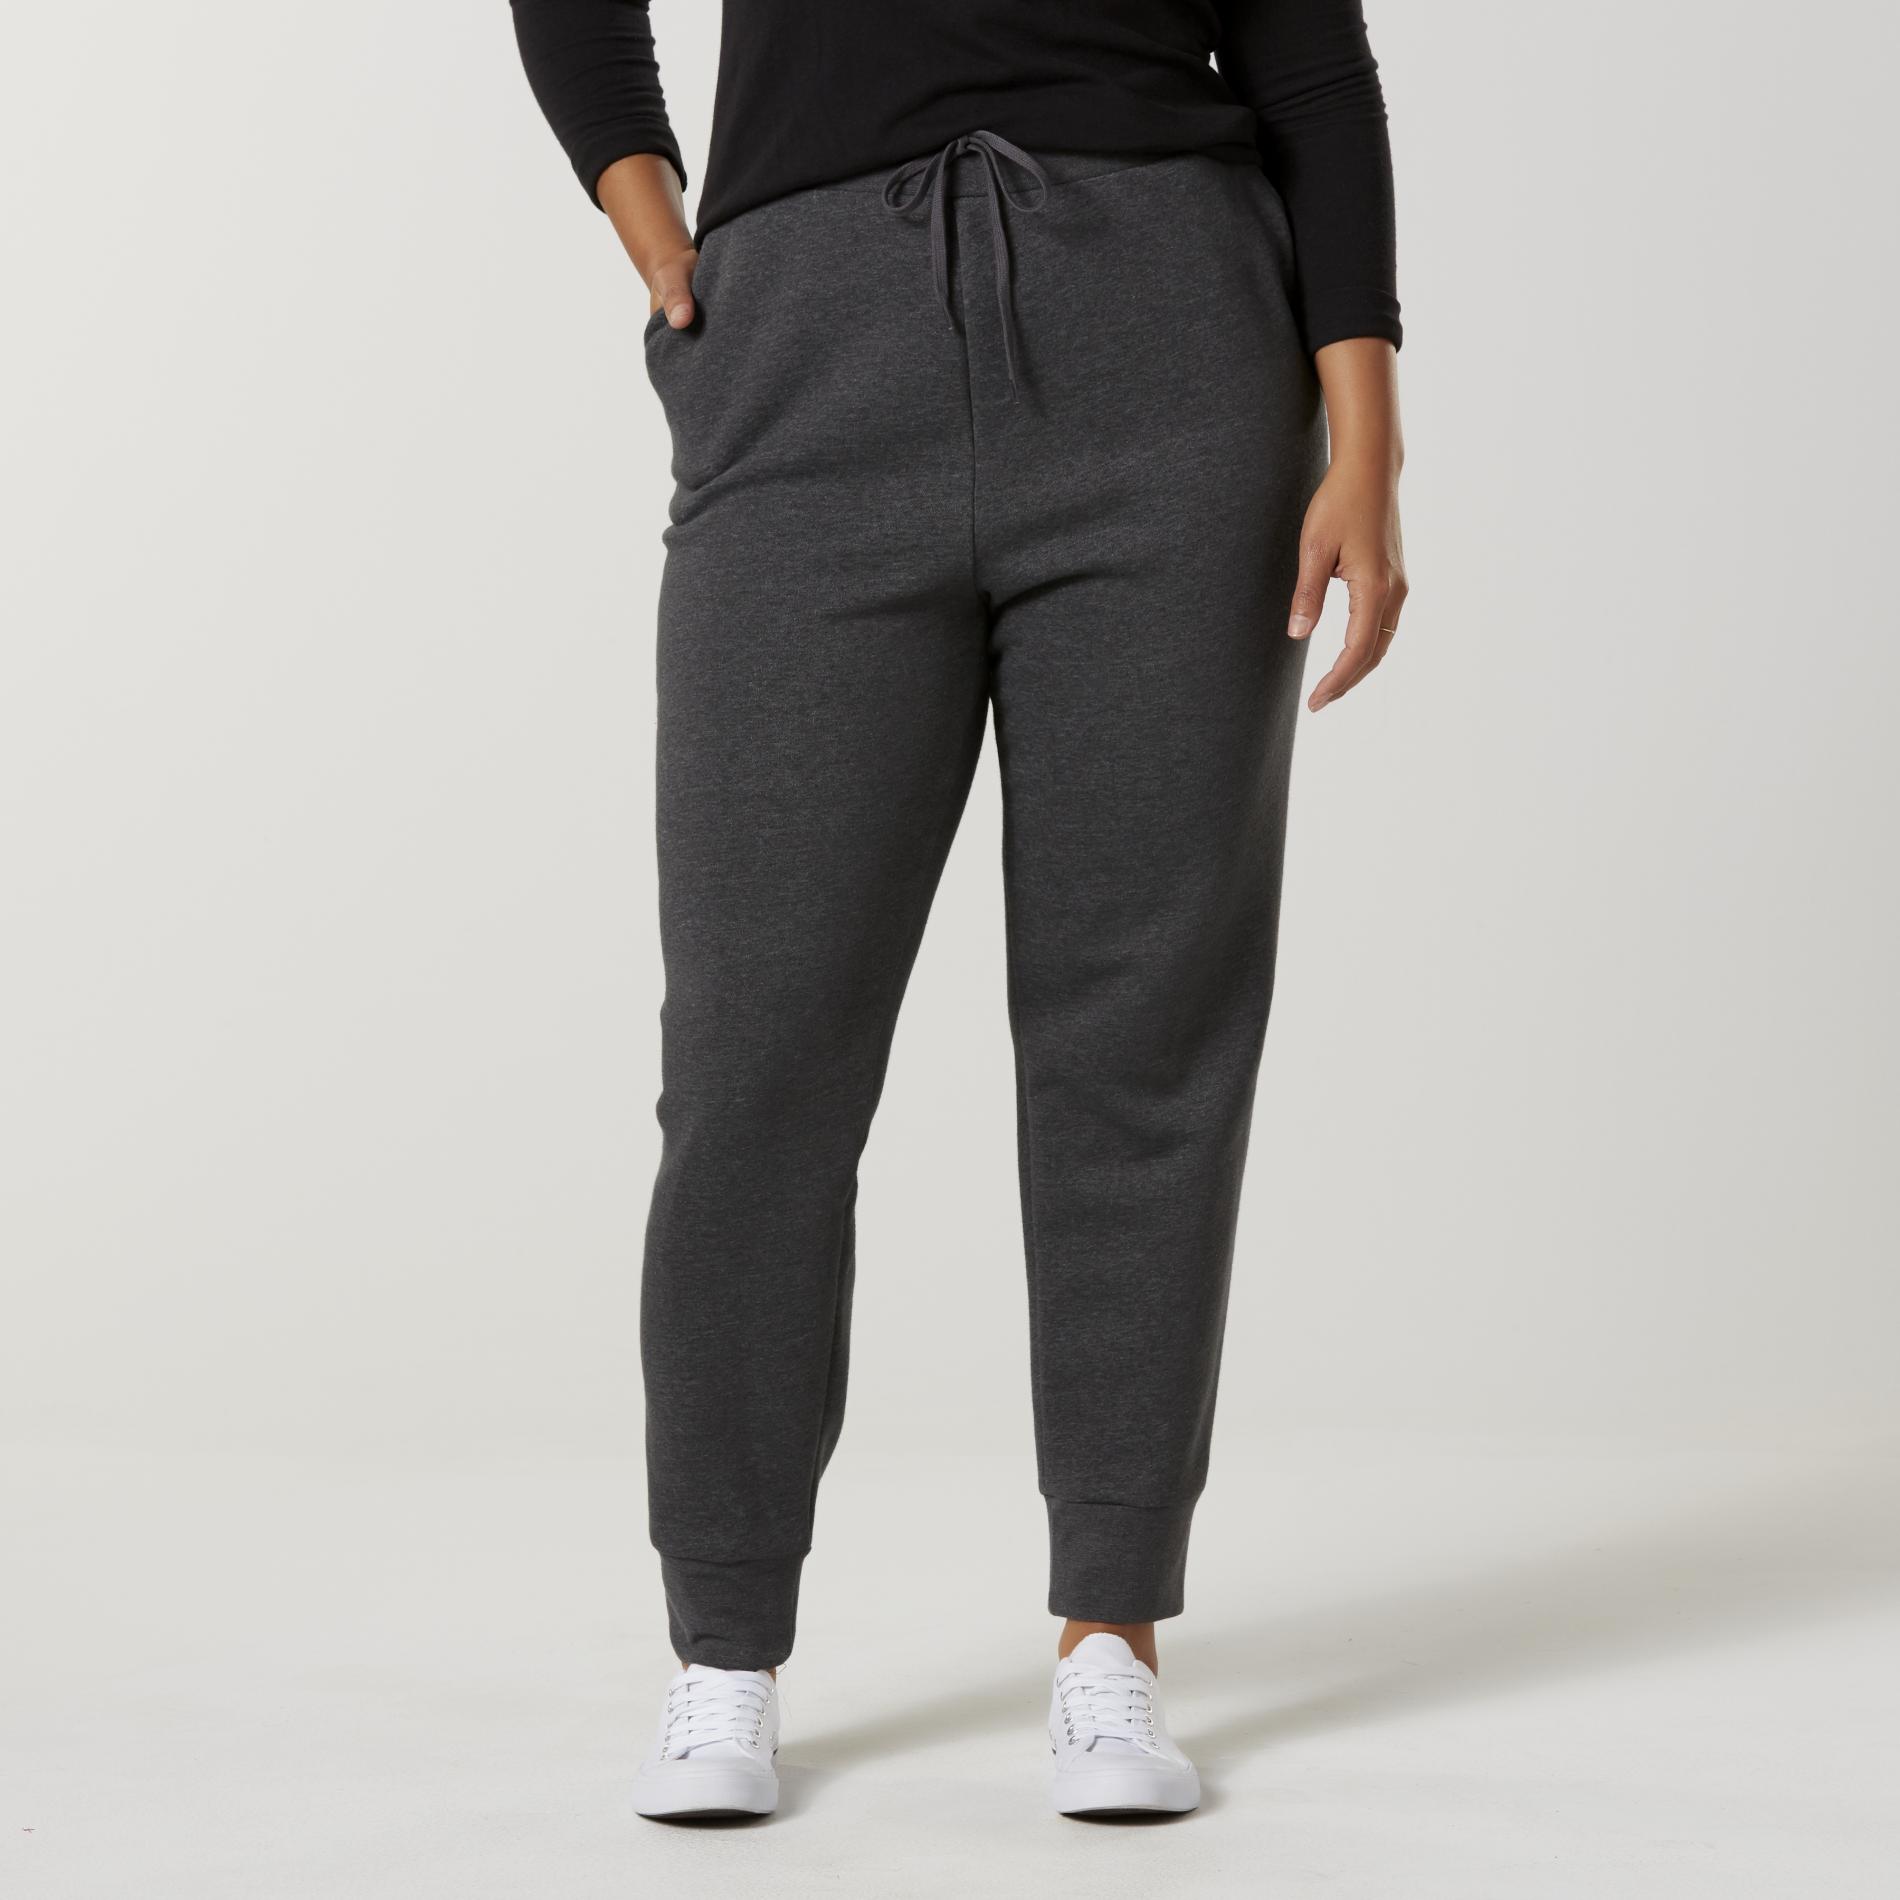 Laura Scott Women's Plus Fleece Jogger Pants | Shop Your Way: Online ...